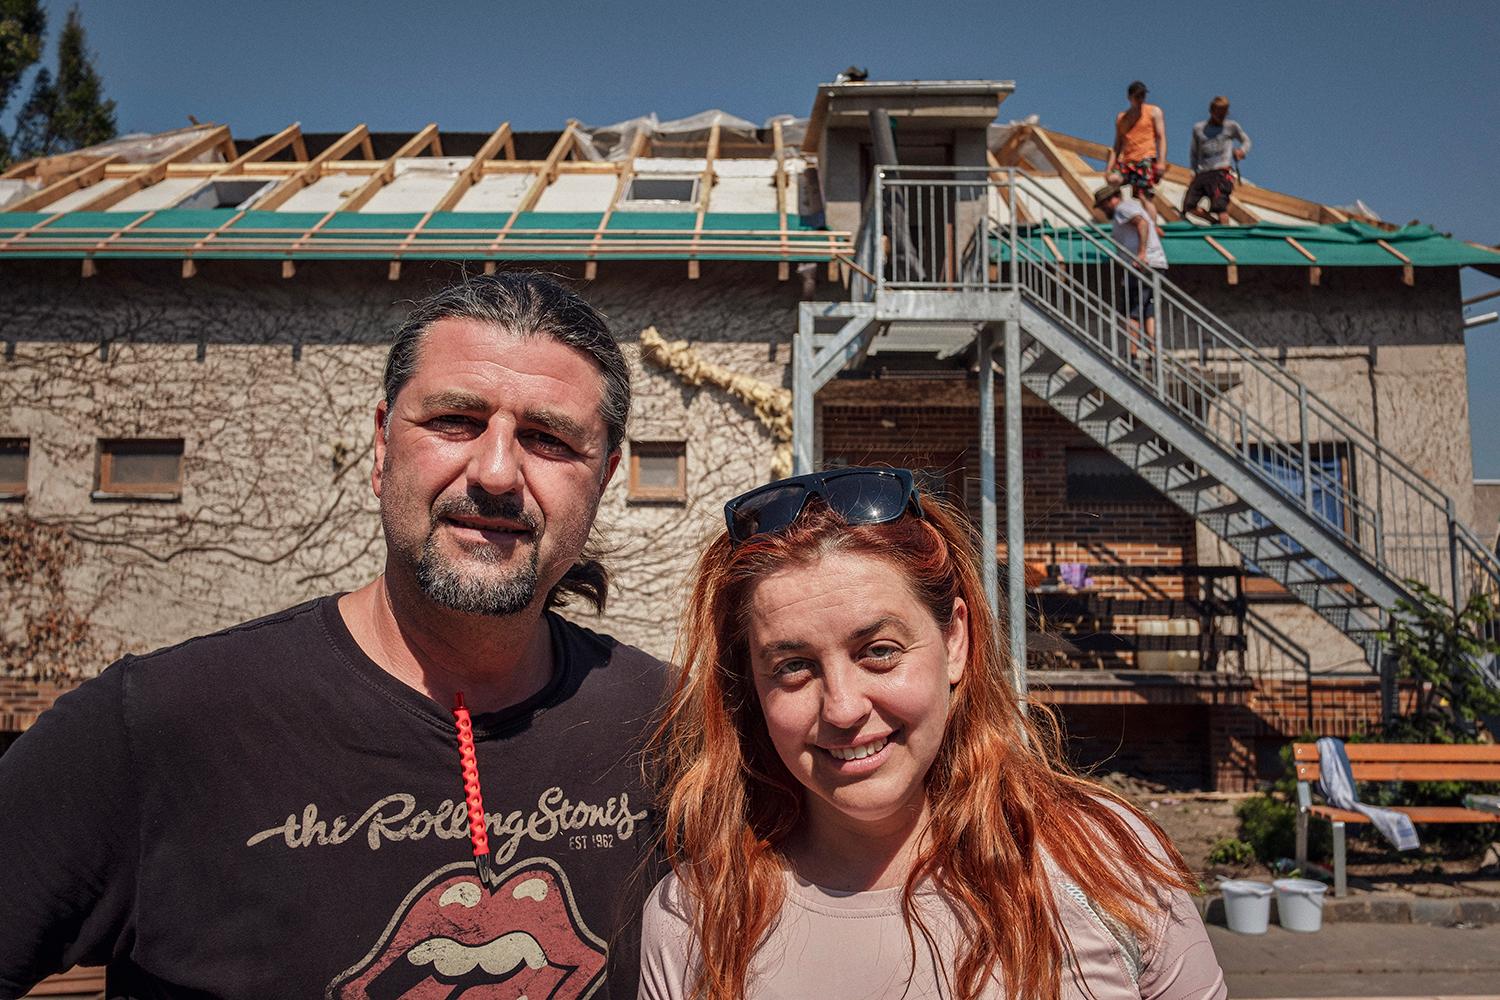 Napriek odviatej streche koordinuje Adéla Sládková s Ľubošom Maštalířom dobrovoľníkov v Moravskej Novej Vsi.